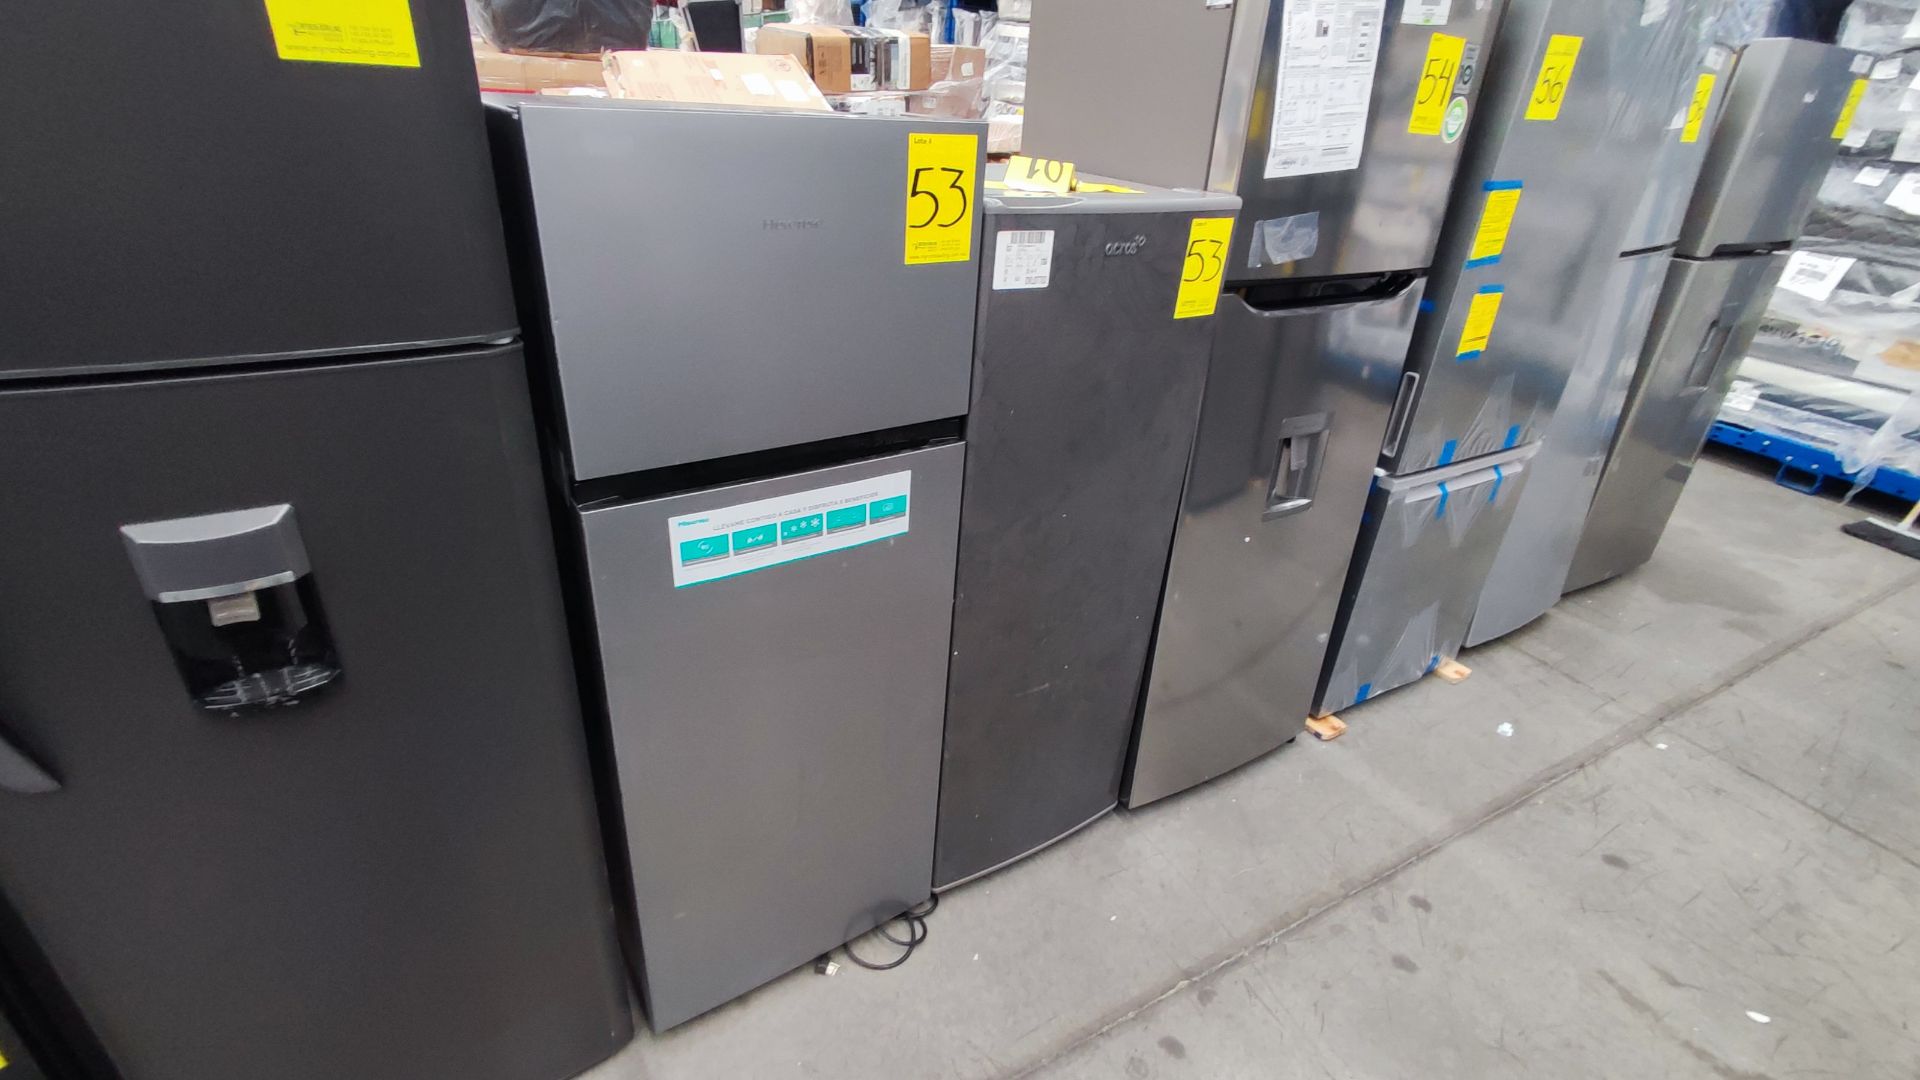 Lote de 2 Refrigeradores, Contiene; 1 Refrigerador Marca Hisense, Modelo BCYNY, Serie 1B0205Z0080JB - Image 3 of 11